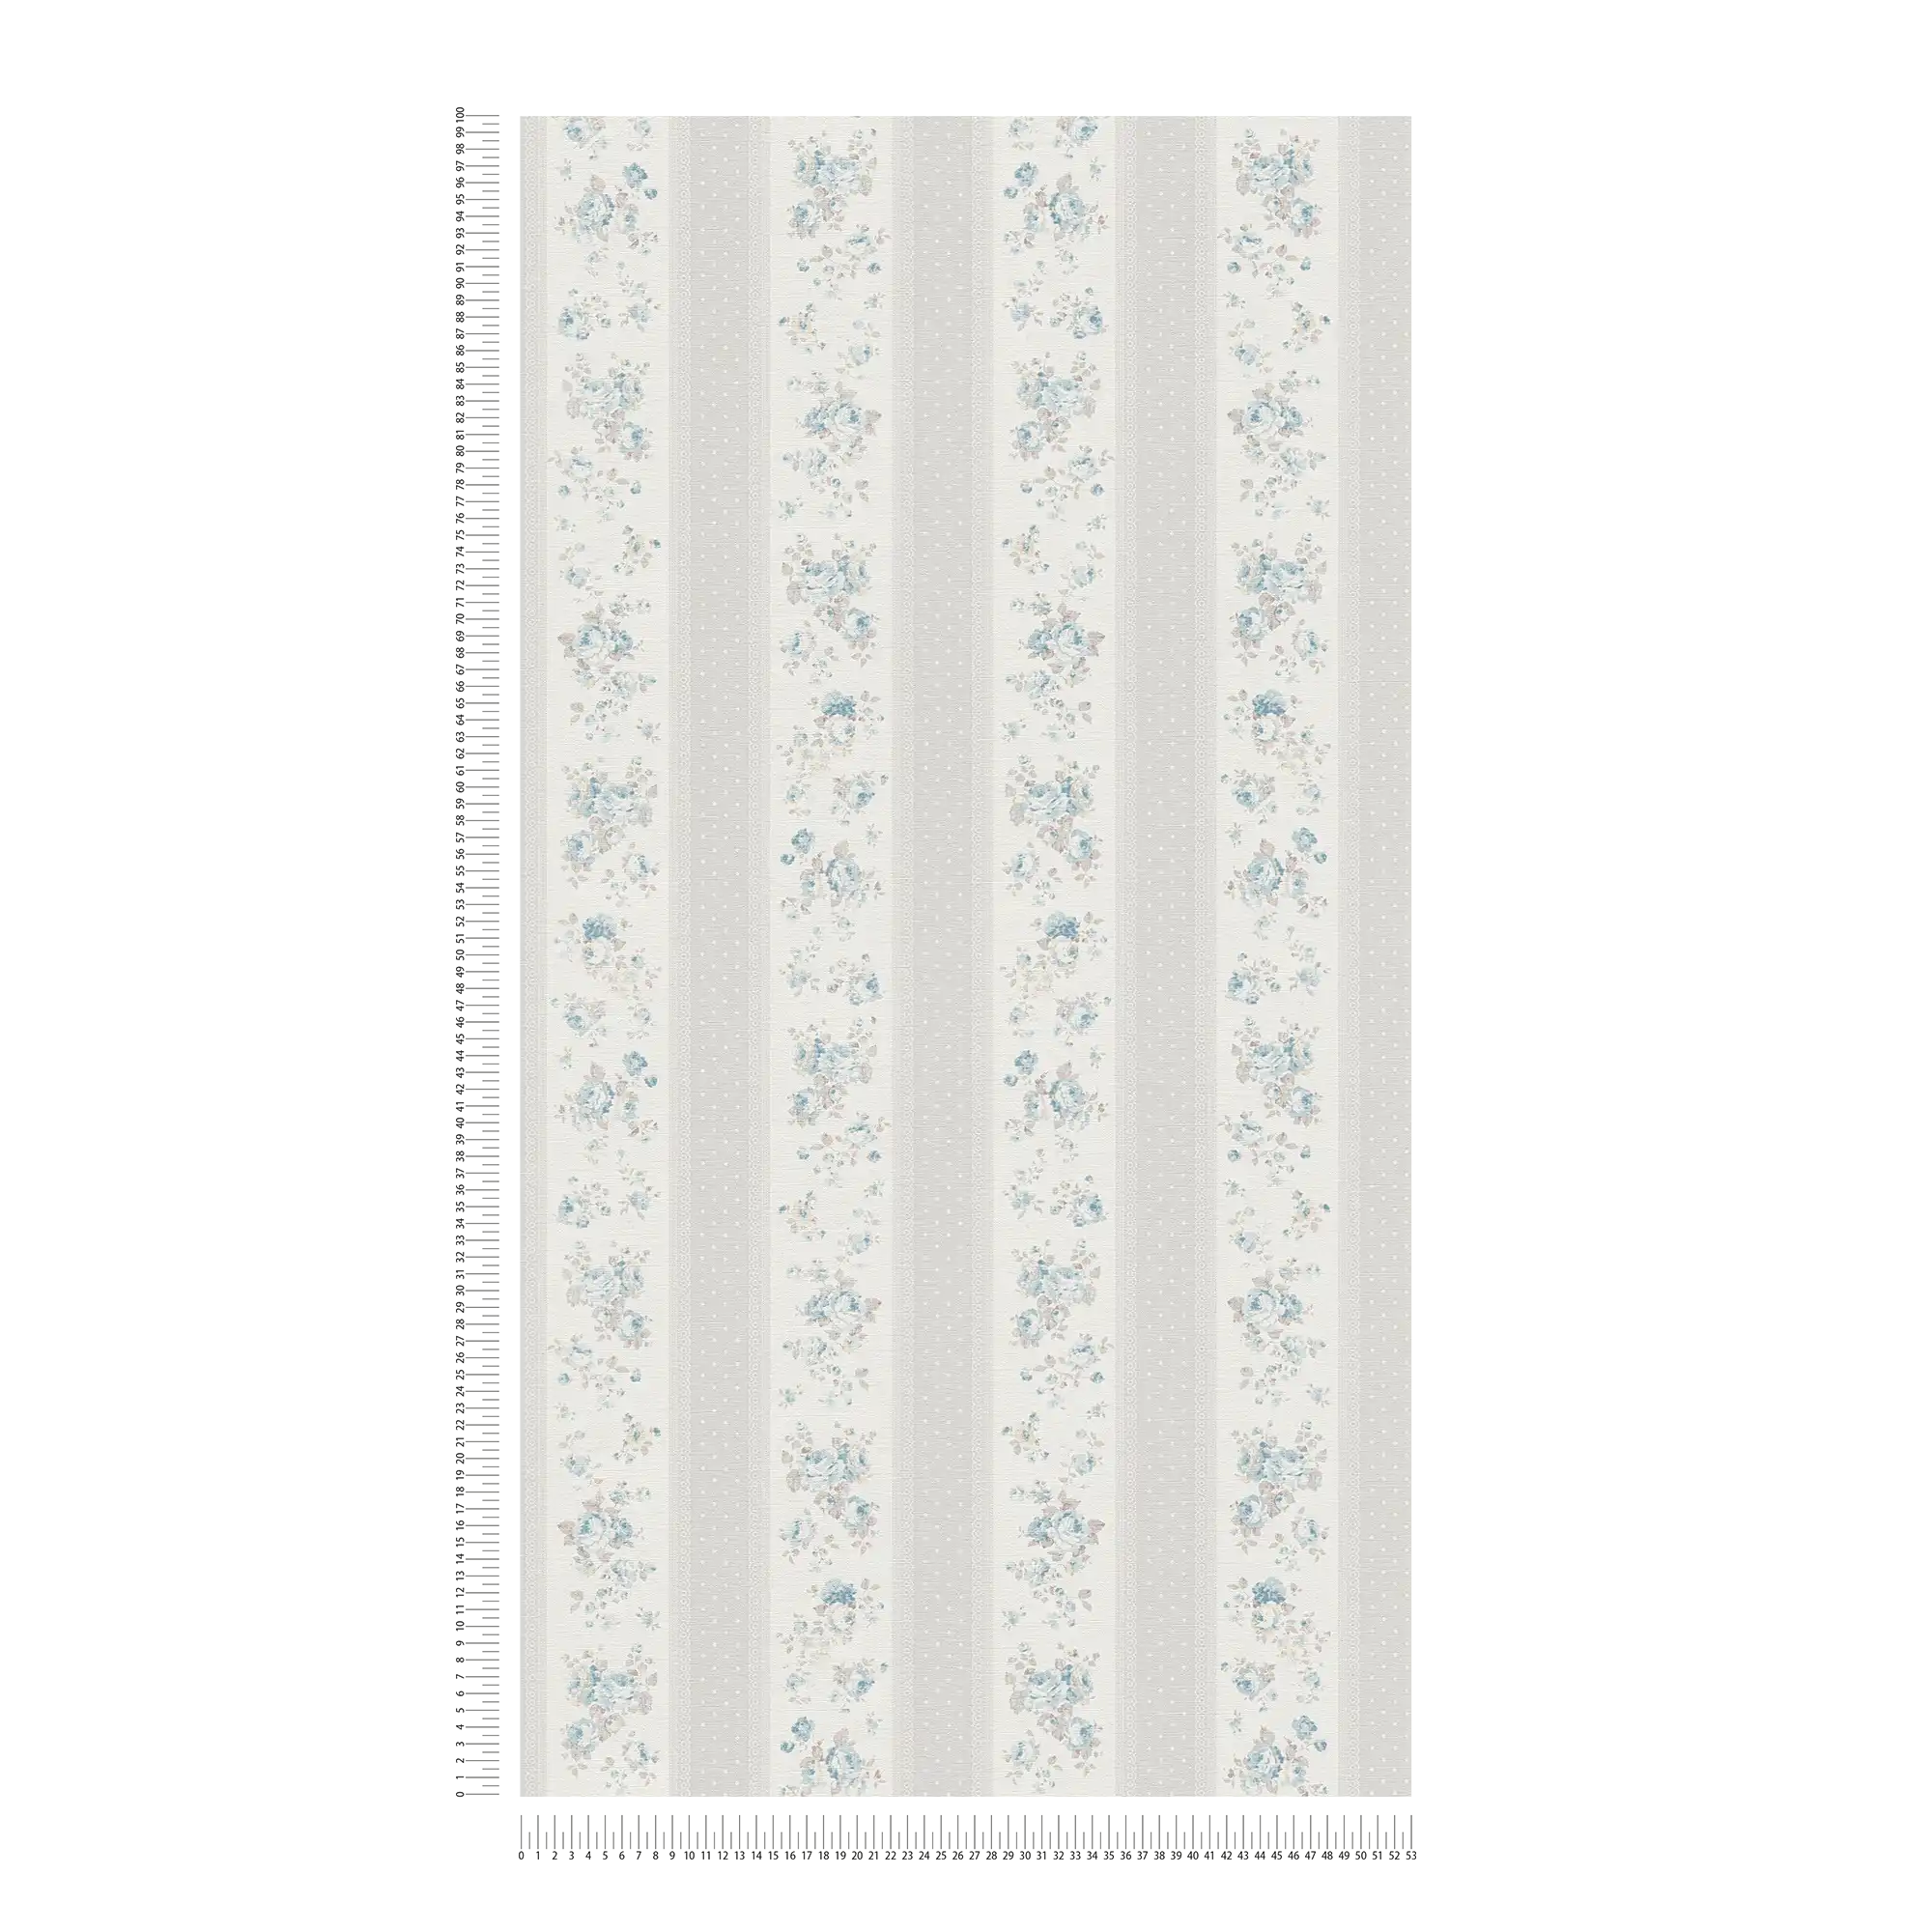             Carta da parati in tessuto non tessuto a righe punteggiate e floreali - grigio, bianco, blu
        